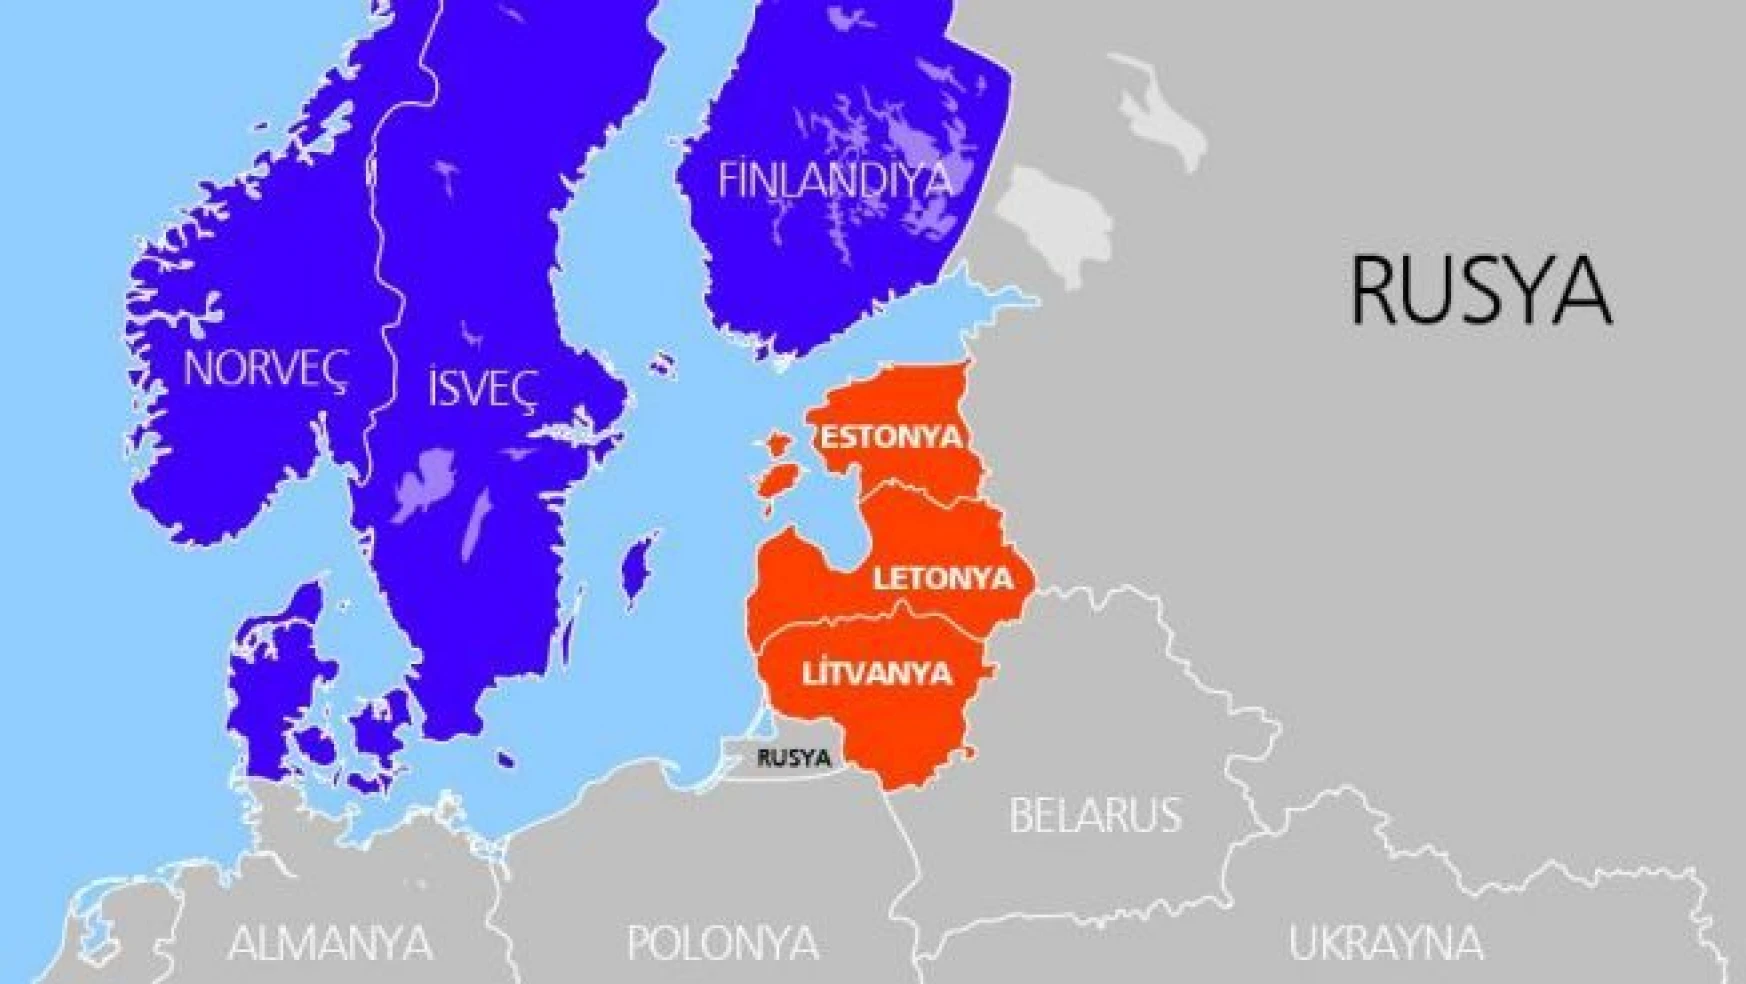 Rusya'nın Baltık ülkeleri üzerindeki baskısı